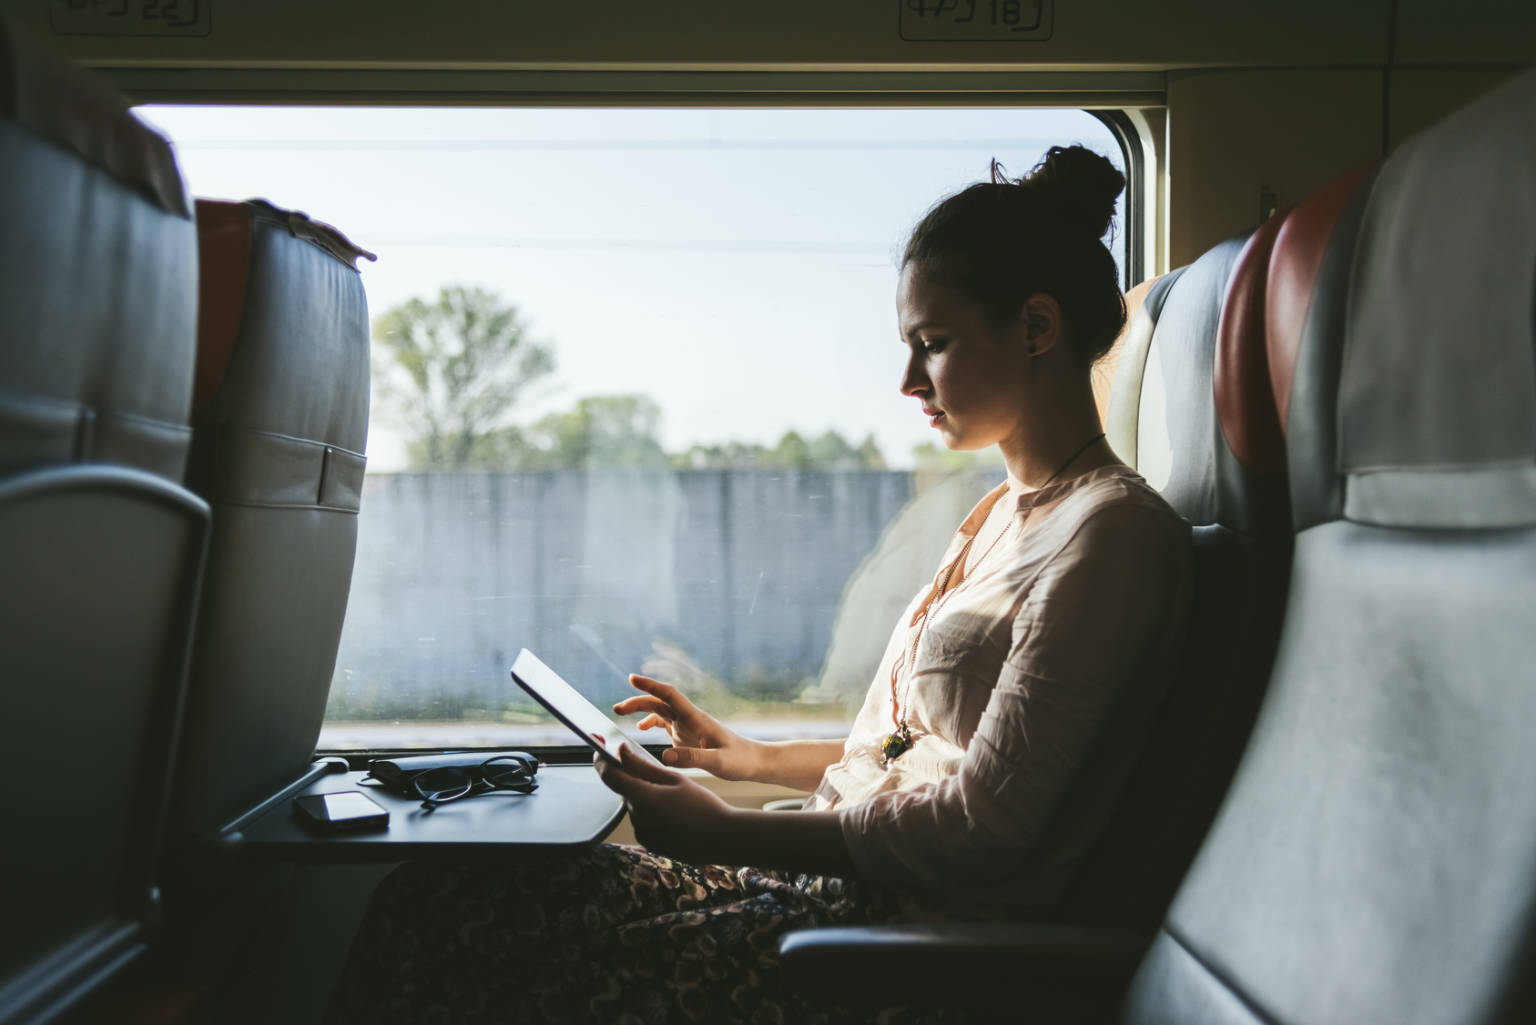 Kvinna arbetar med mobilt bredband på tåg.